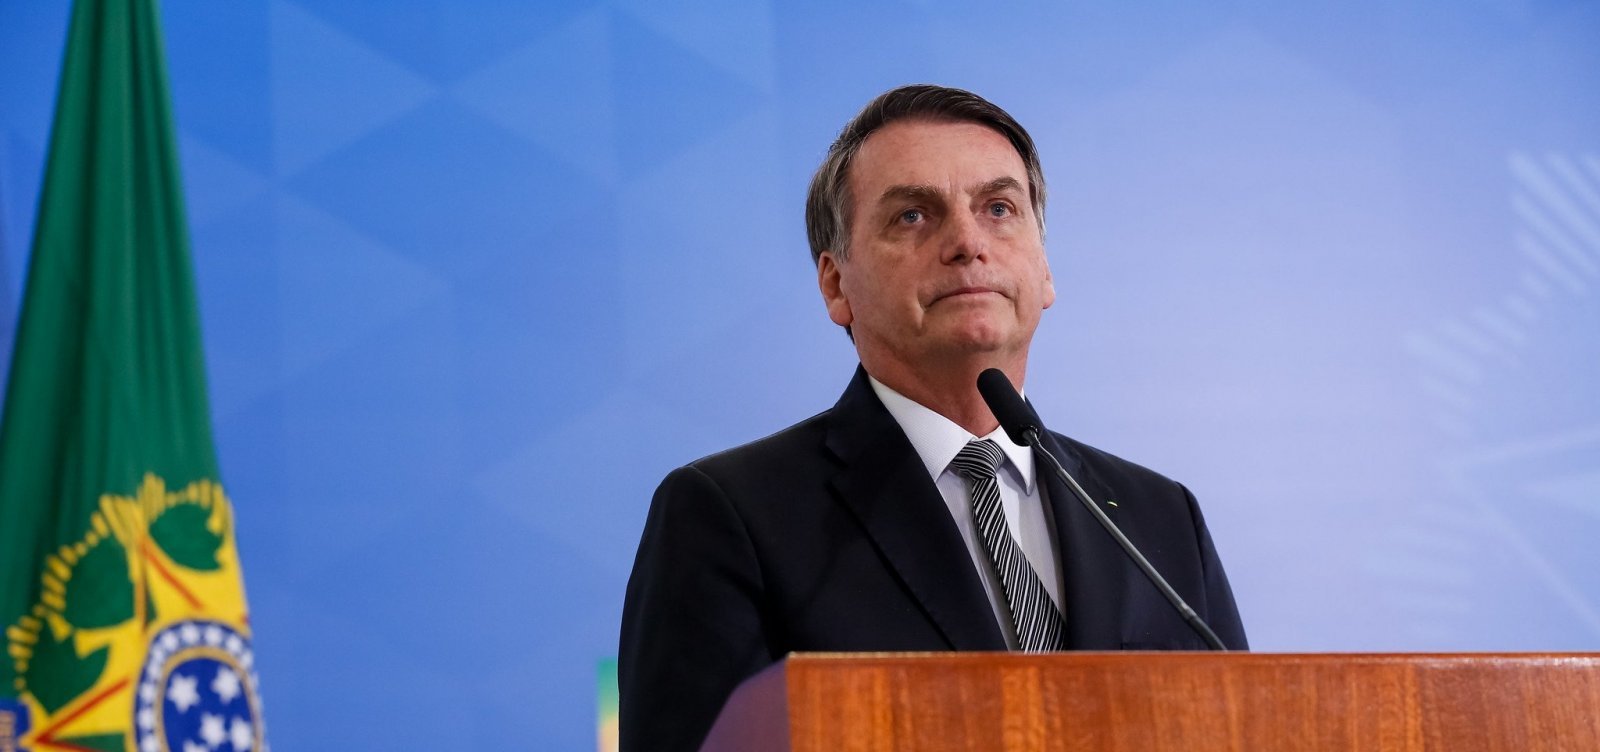 Inquérito das Fake News encontra informações que podem prejudicar Bolsonaro, mas TSE as mantém em sigilo